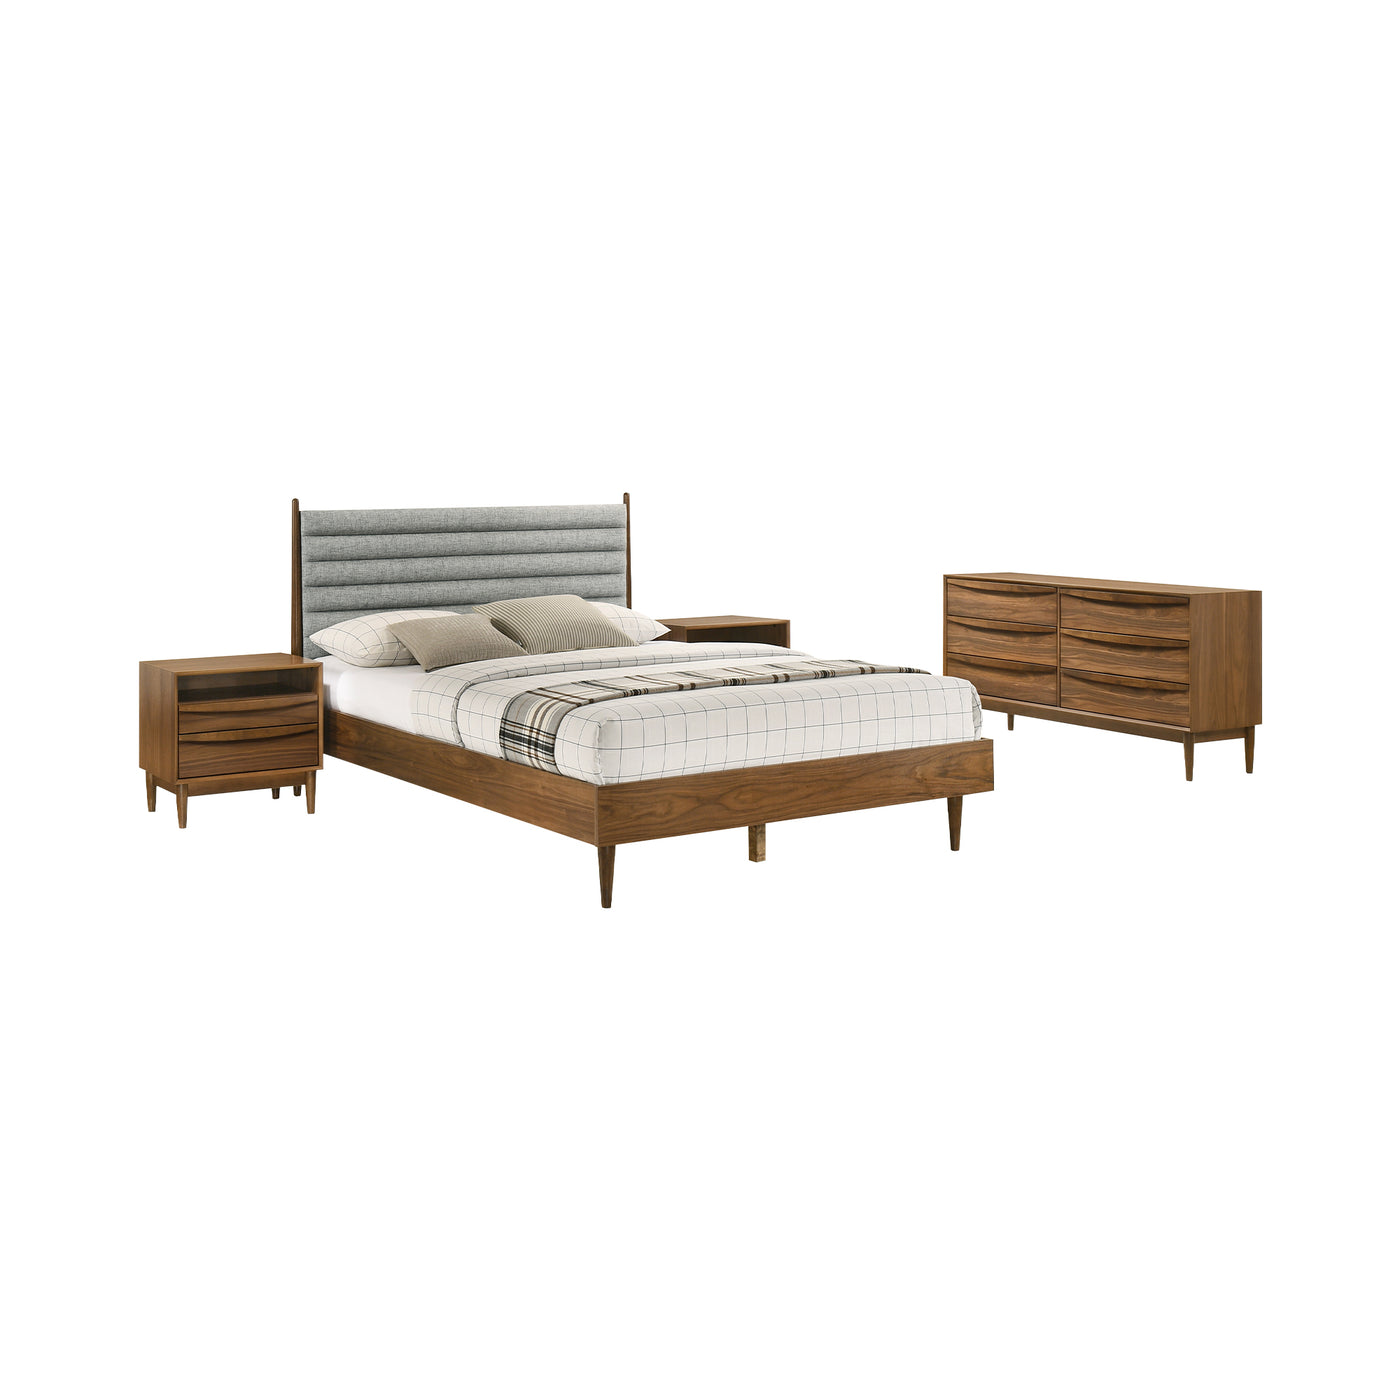 Artemio 4 Piece Wood Bedroom Set